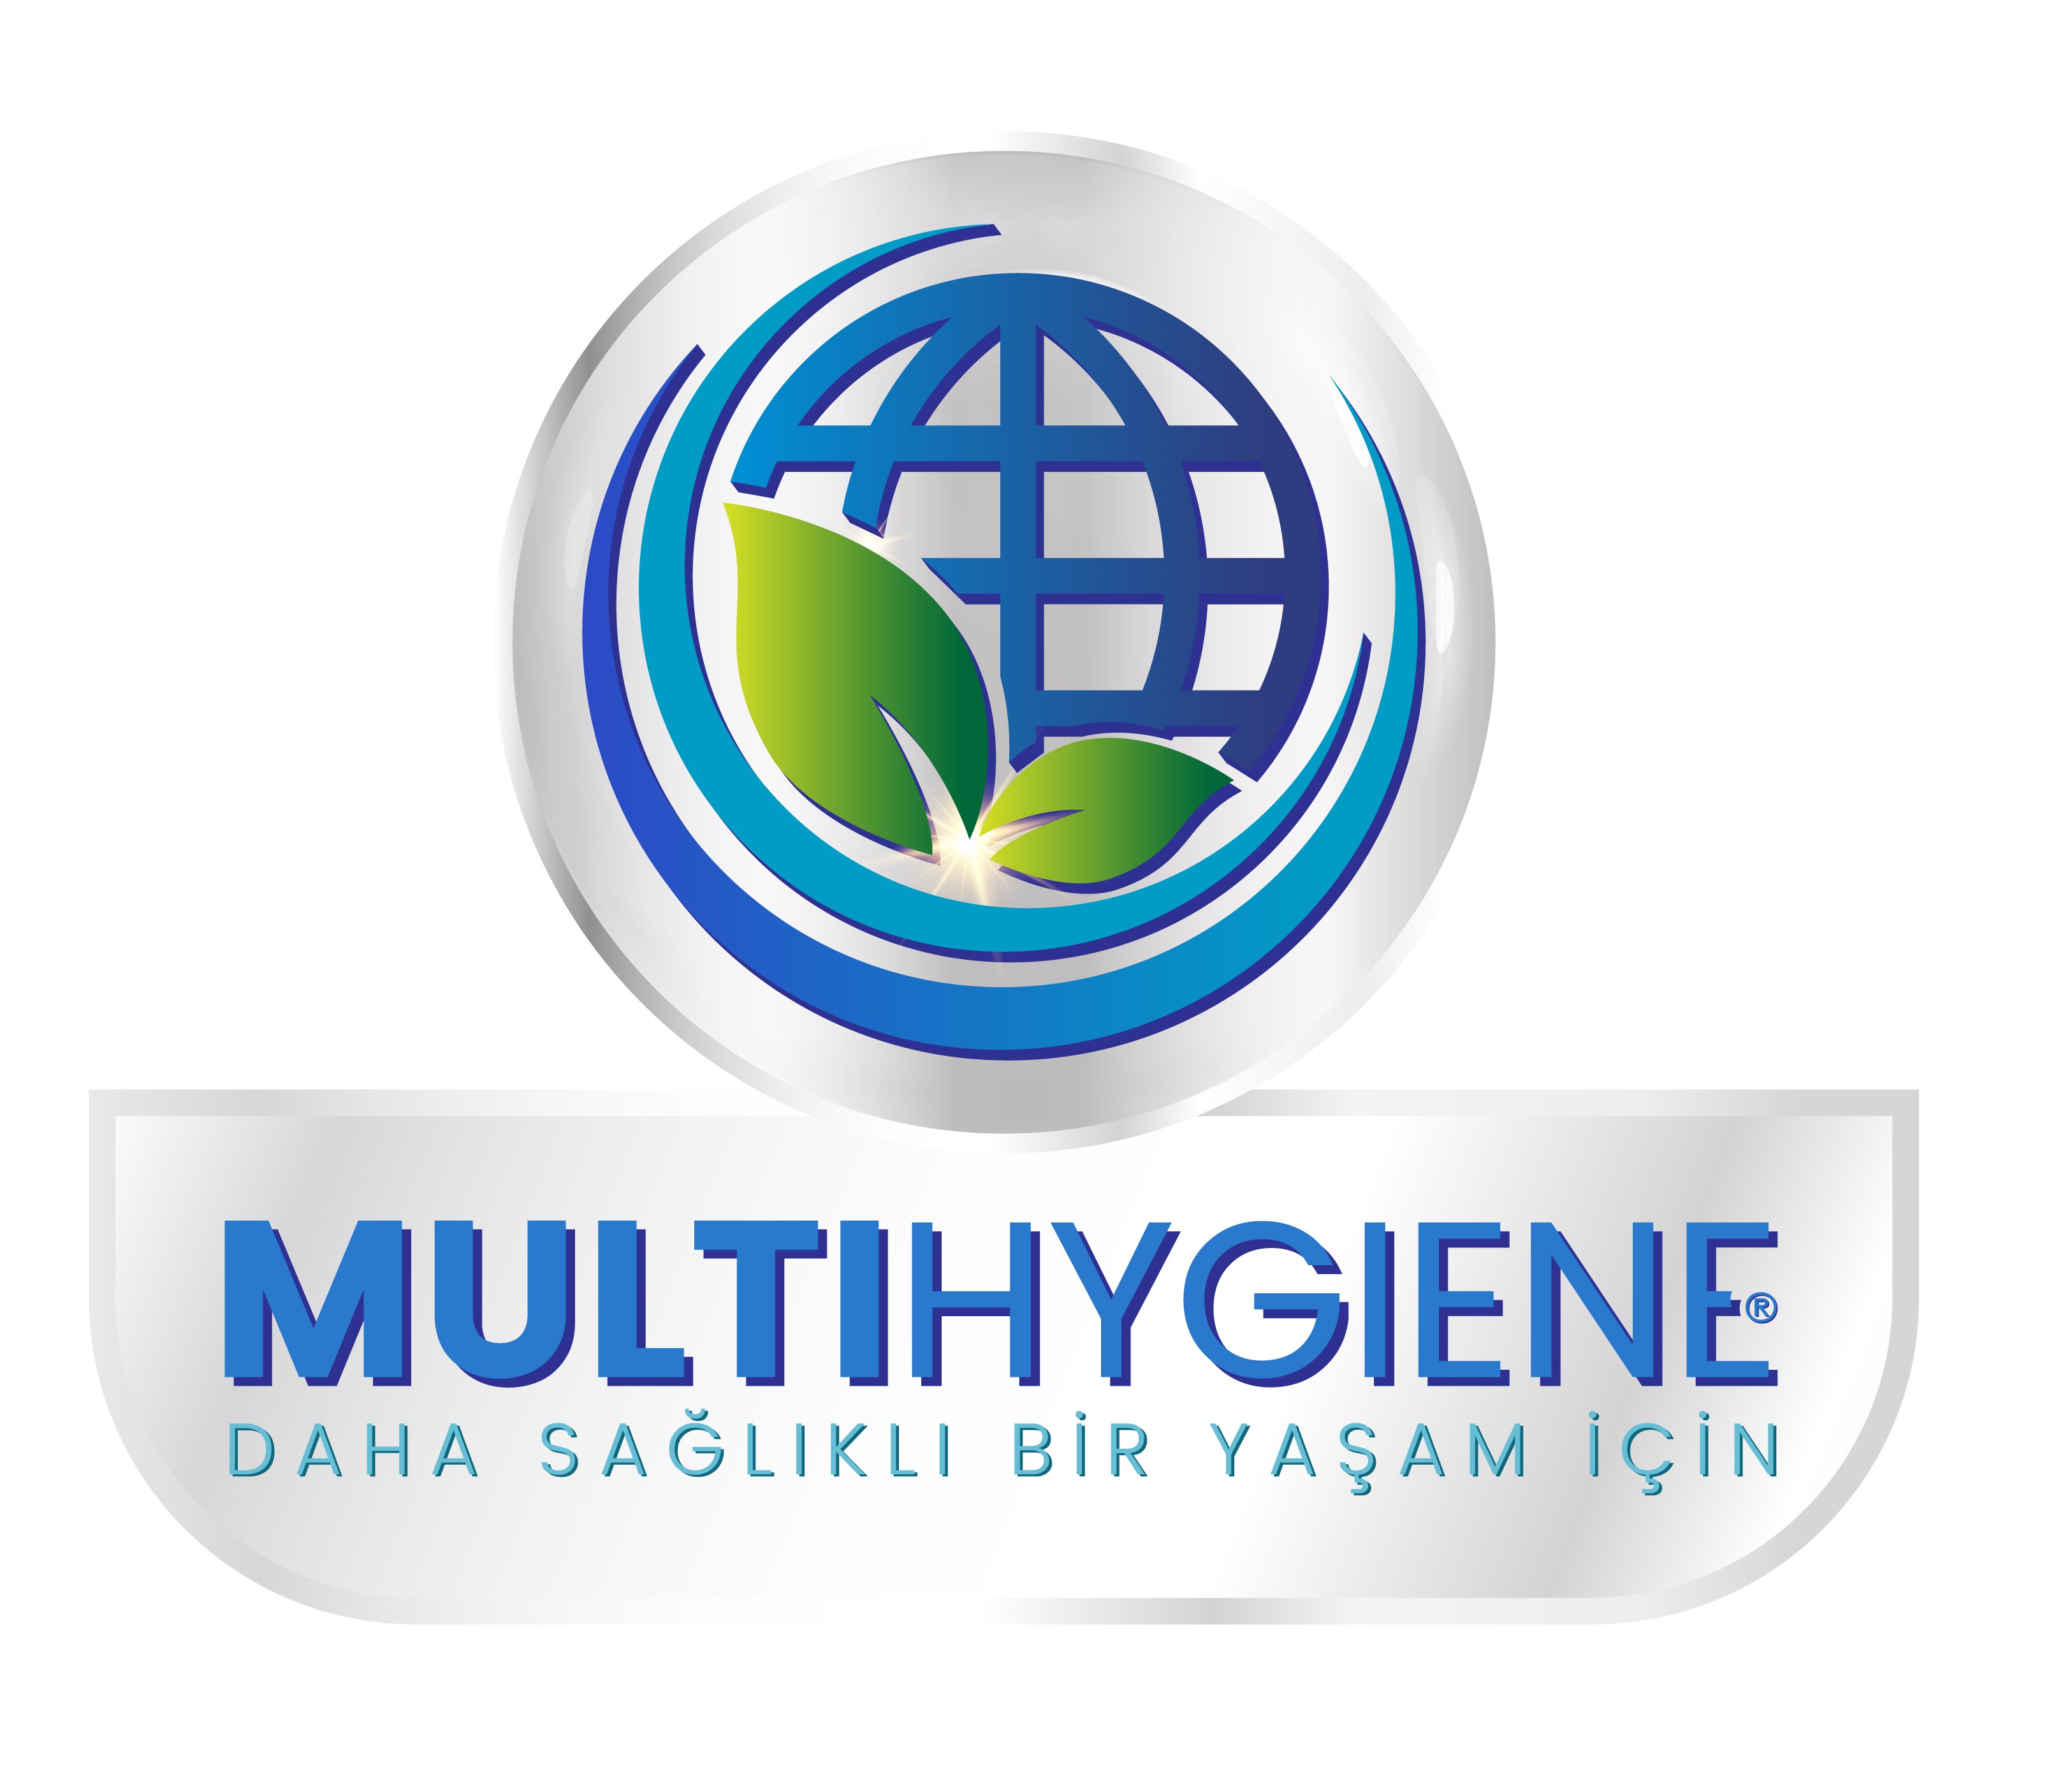 Multi Tedarik Kimya Danışmanlık Pazarlama Sanayi ve Ticaret Limited Şirketi Her Hakkı Saklıdır.